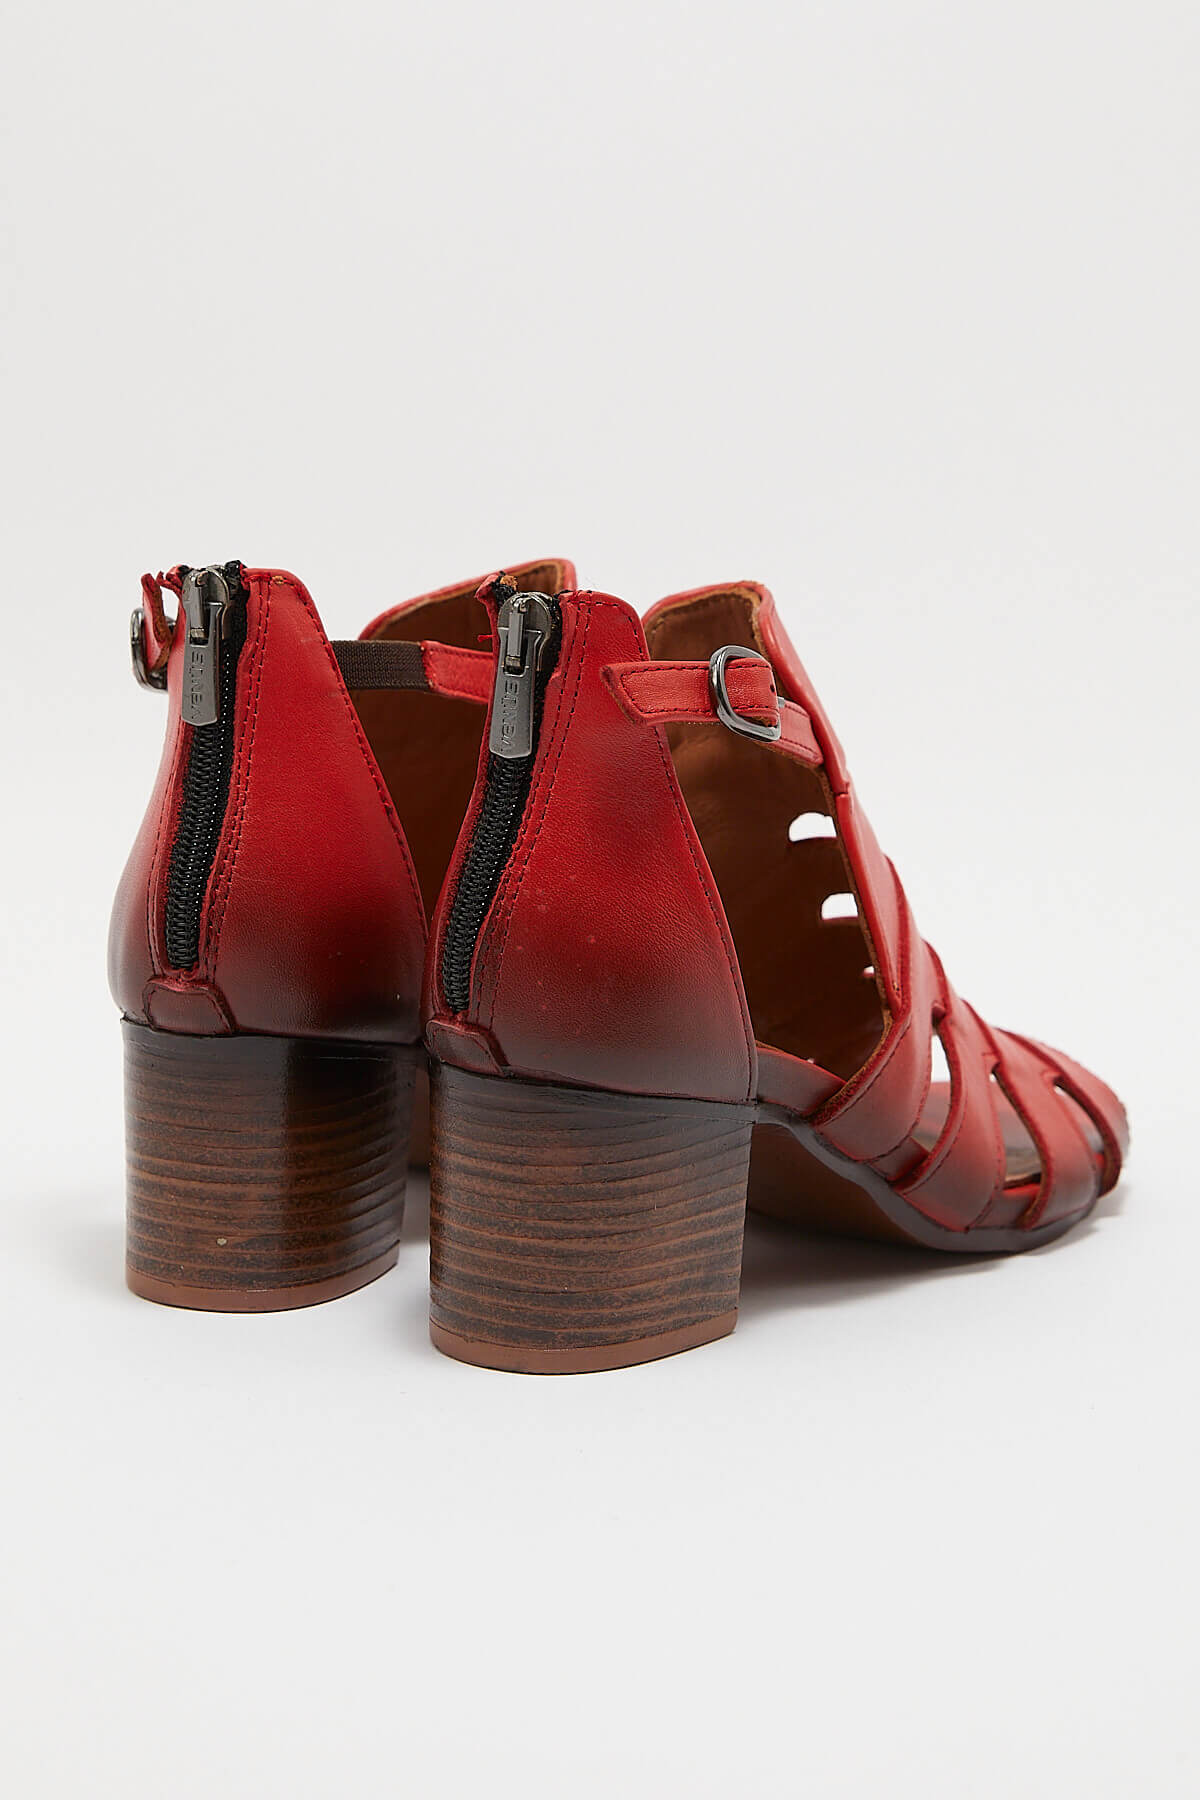 Kadın Topuklu Deri Sandalet Kırmızı 1857211Y - Thumbnail